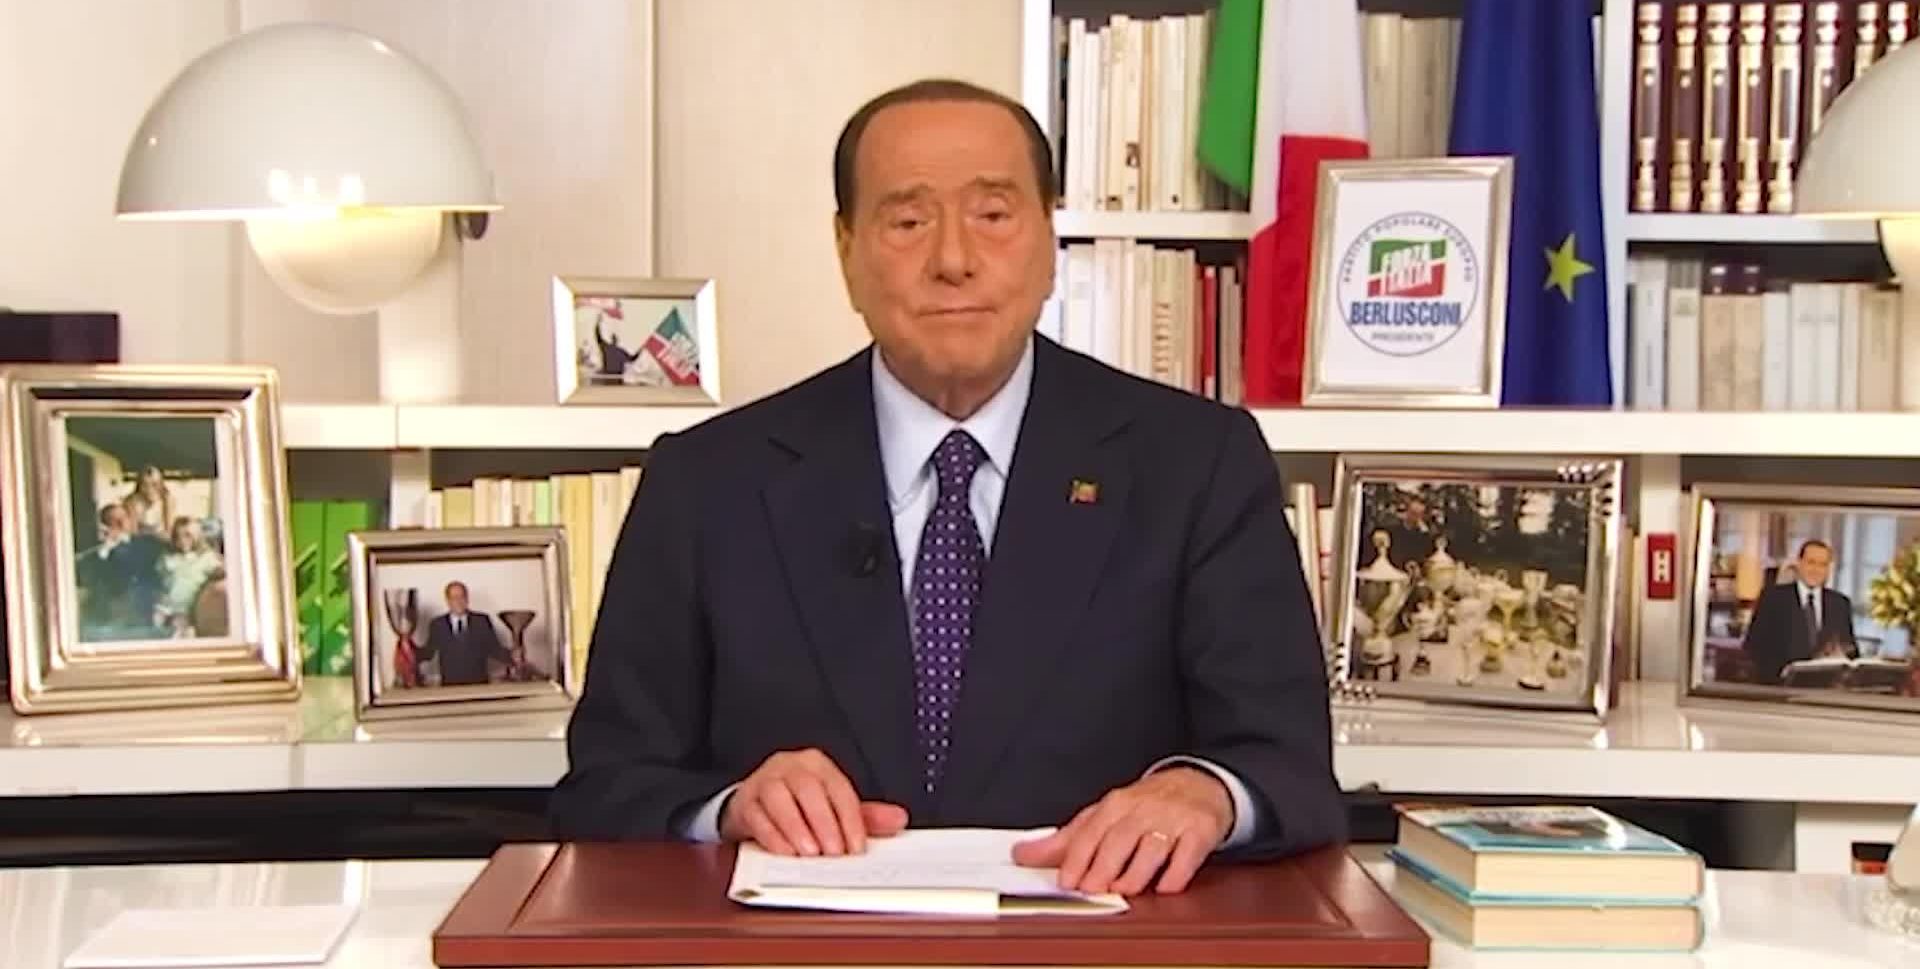 Elezioni, Berlusconi: "Facciamo ripartire quello che la sinistra ha bloccato"